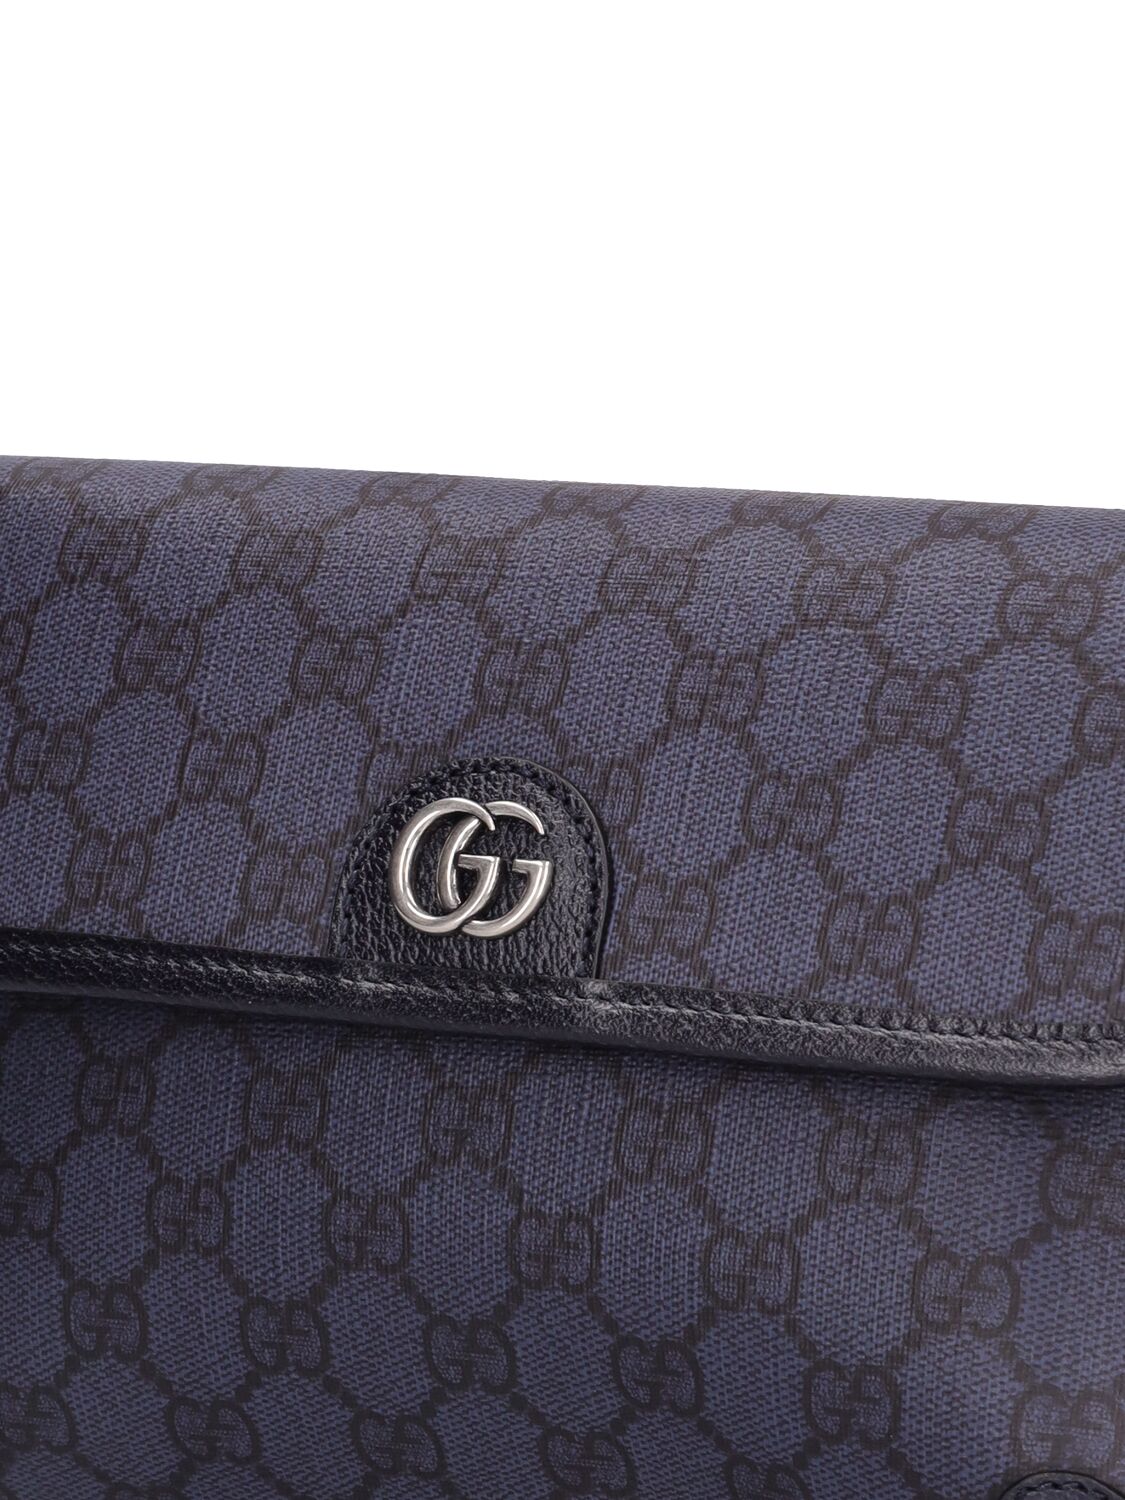 Gucci Ophidia Gg Supreme Belt Bag In Blue,black